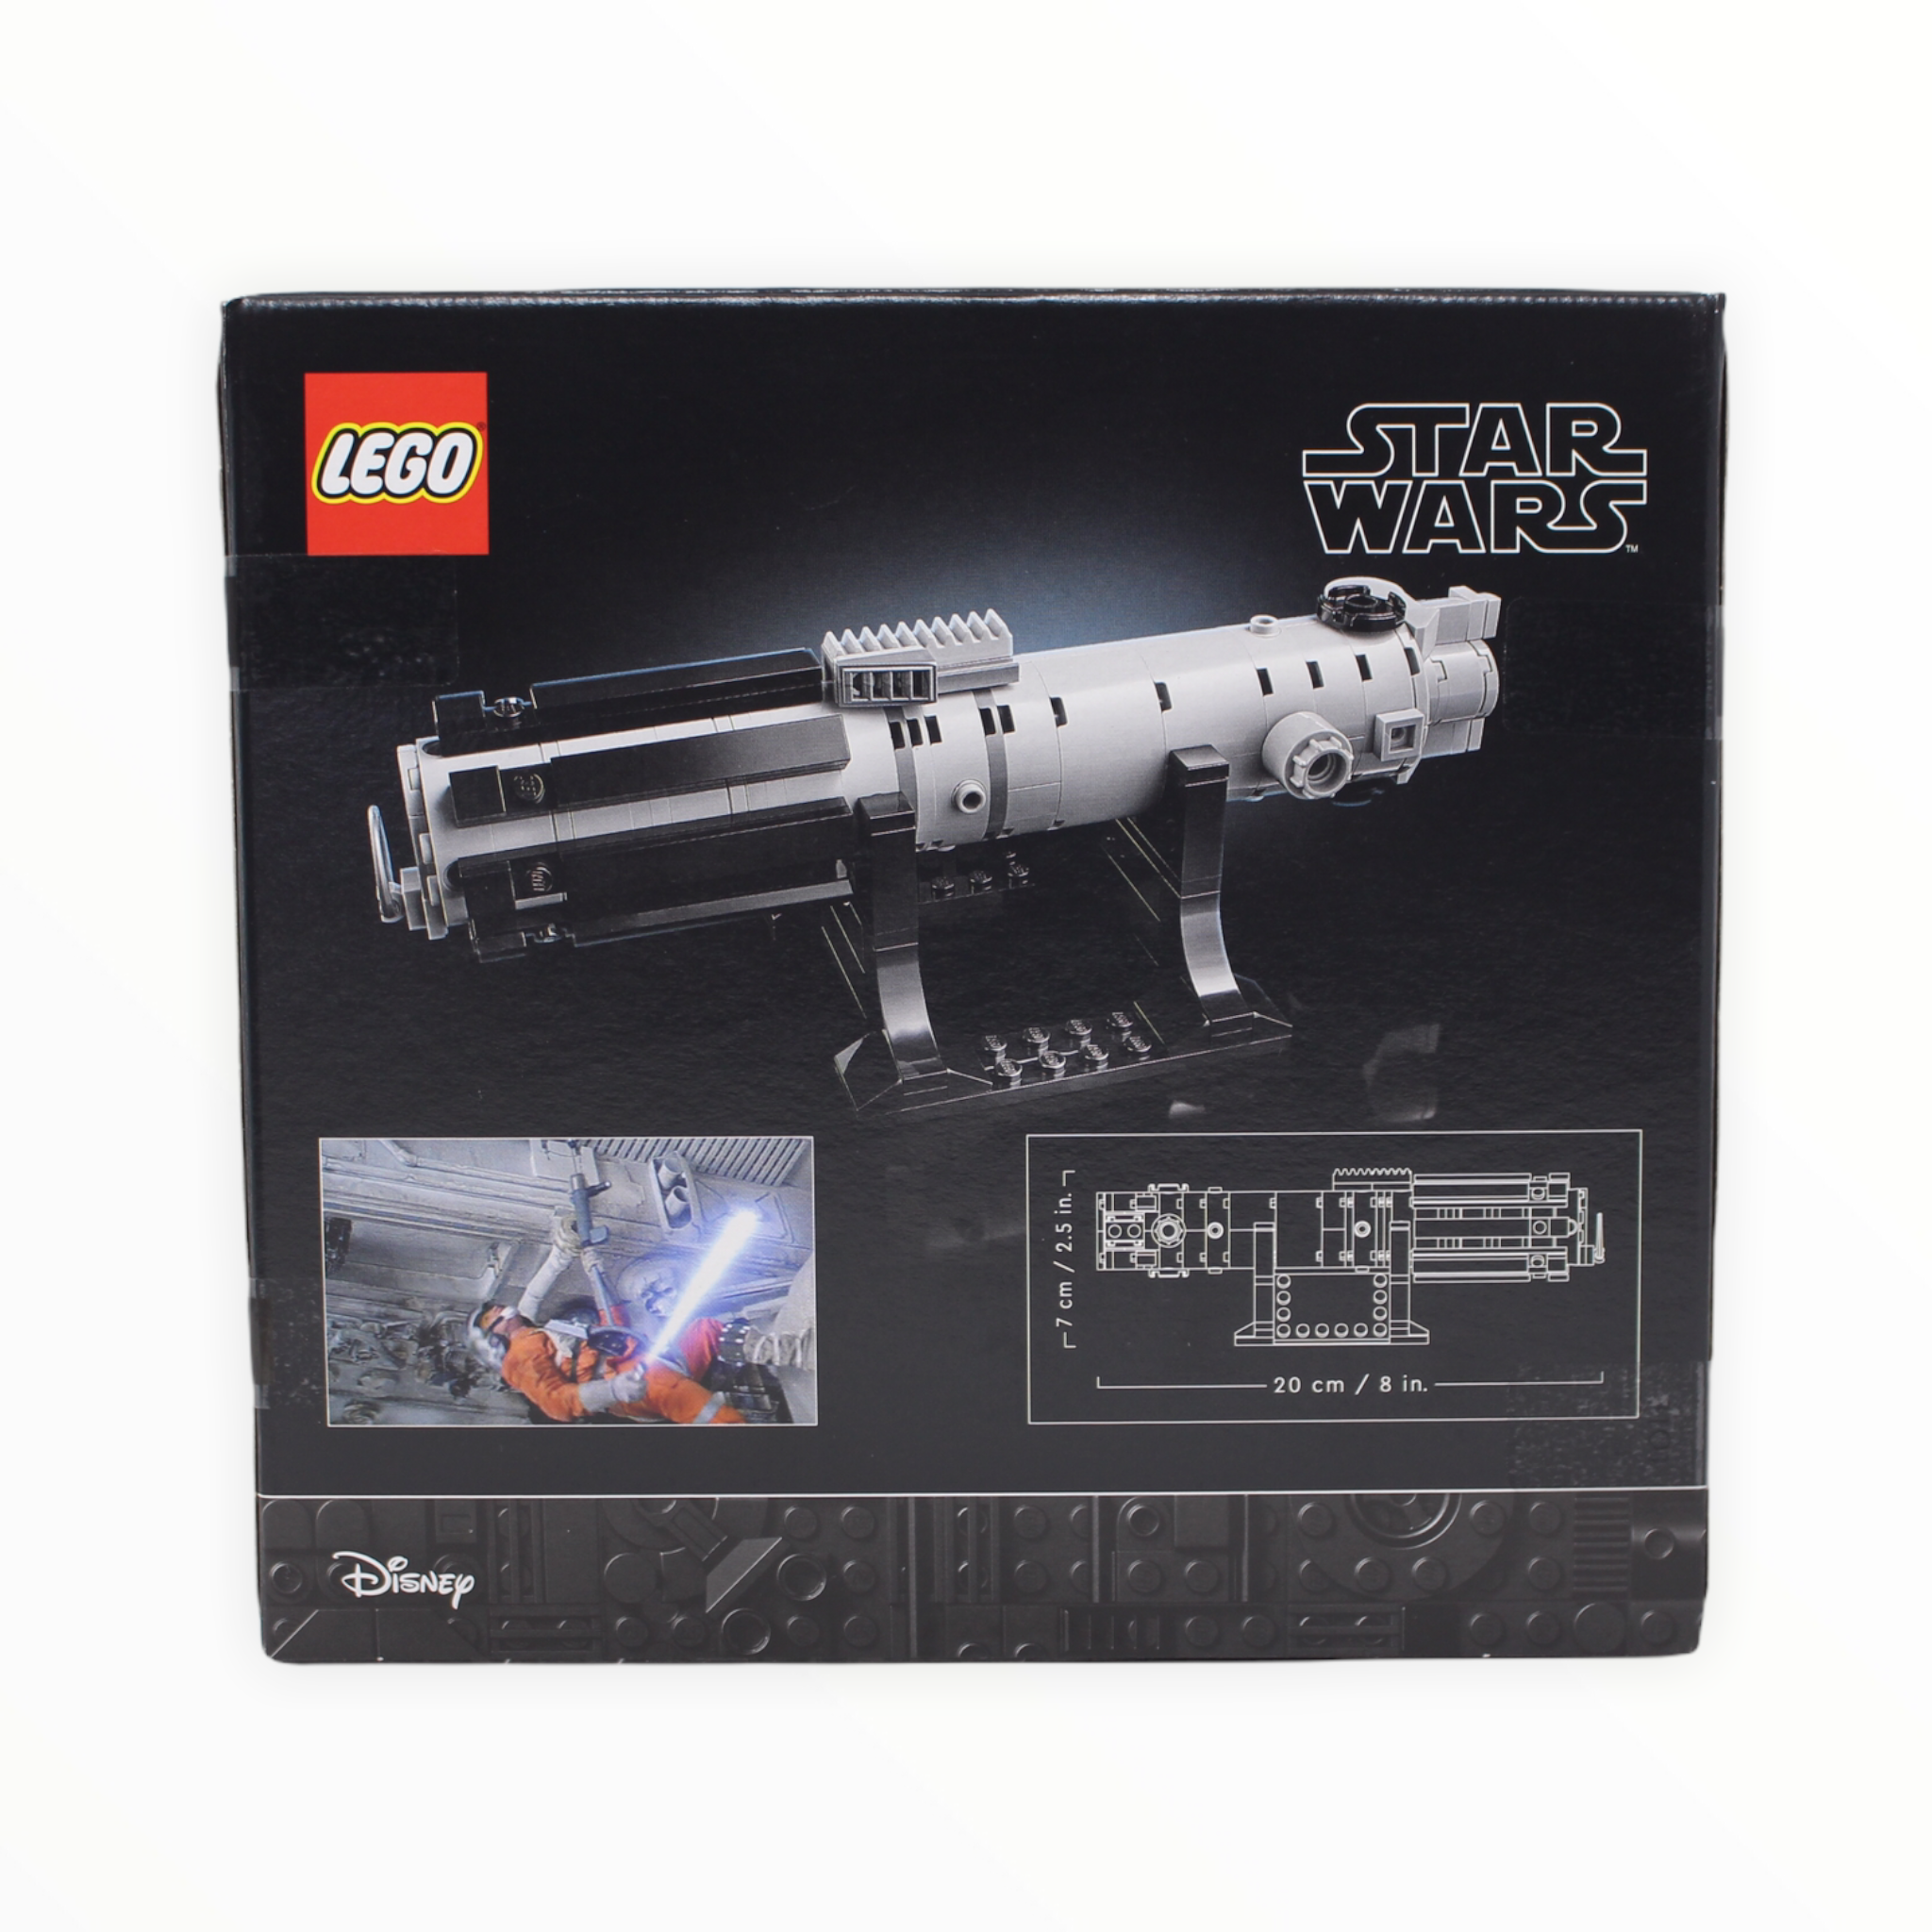 Retired Set 40483 Star Wars Luke Skywalker’s Lightsaber